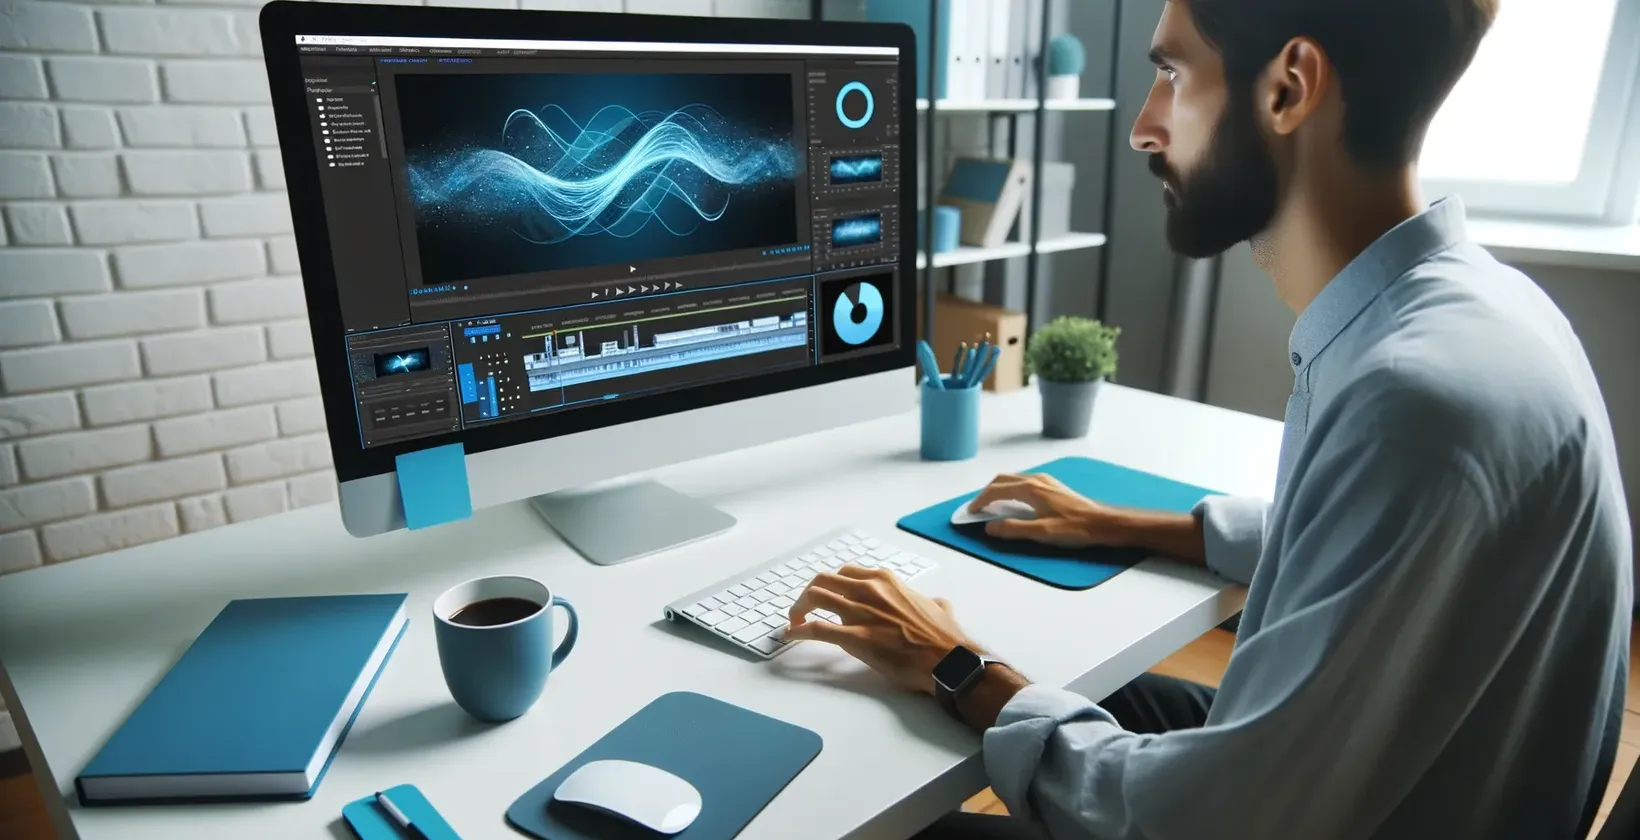 Мужчина набирает текст на компьютере с голубым экраном, используя субтитры iMovie